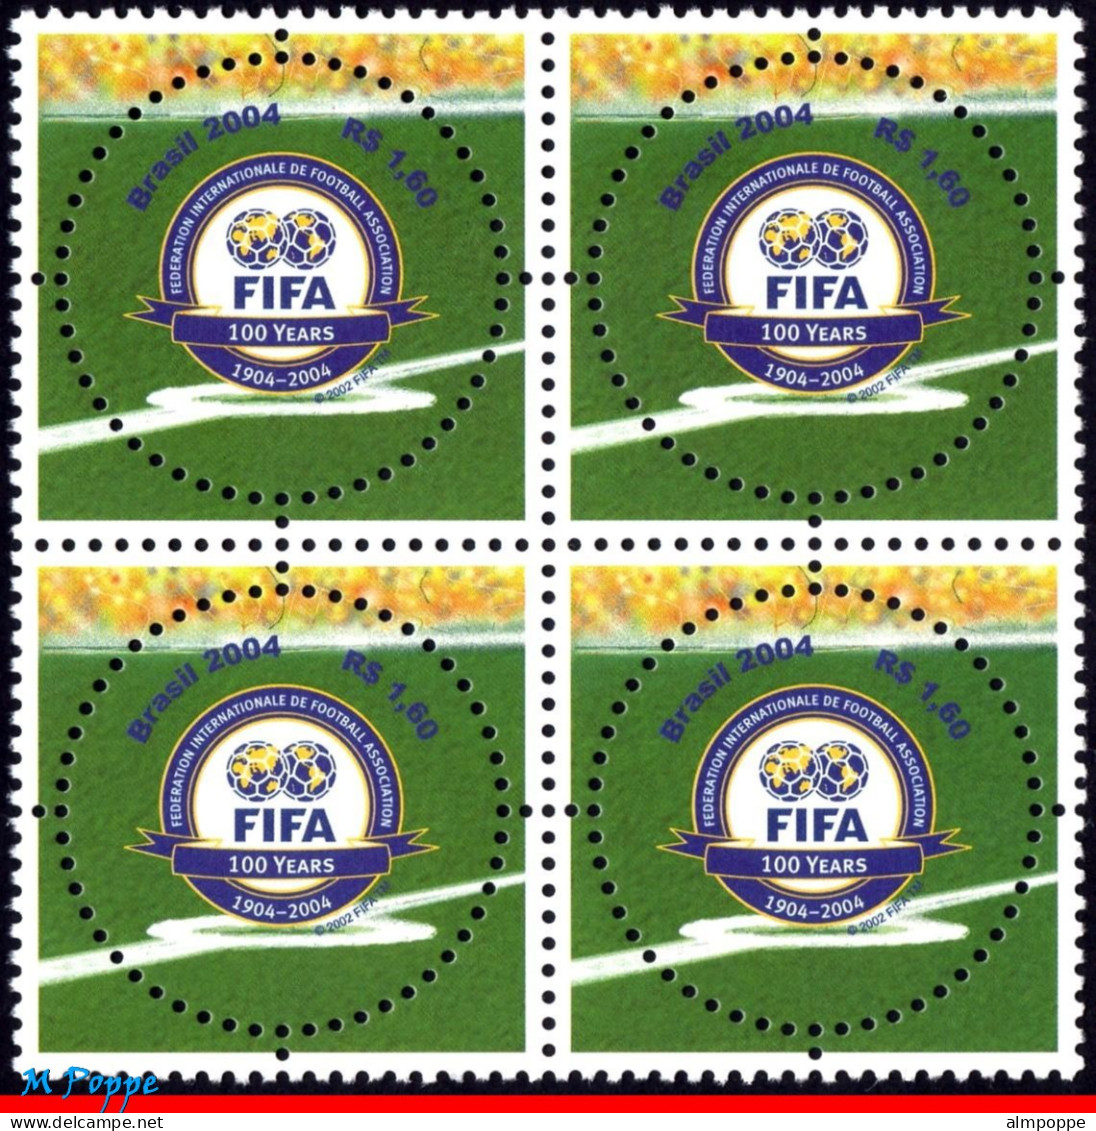 Ref. BR-2924-Q BRAZIL 2004 - FIFA CENTENARY, SPORT,MI# 3357, BLOCK MNH, FOOTBALL SOCCER 4V Sc# 2924 - Blocs-feuillets